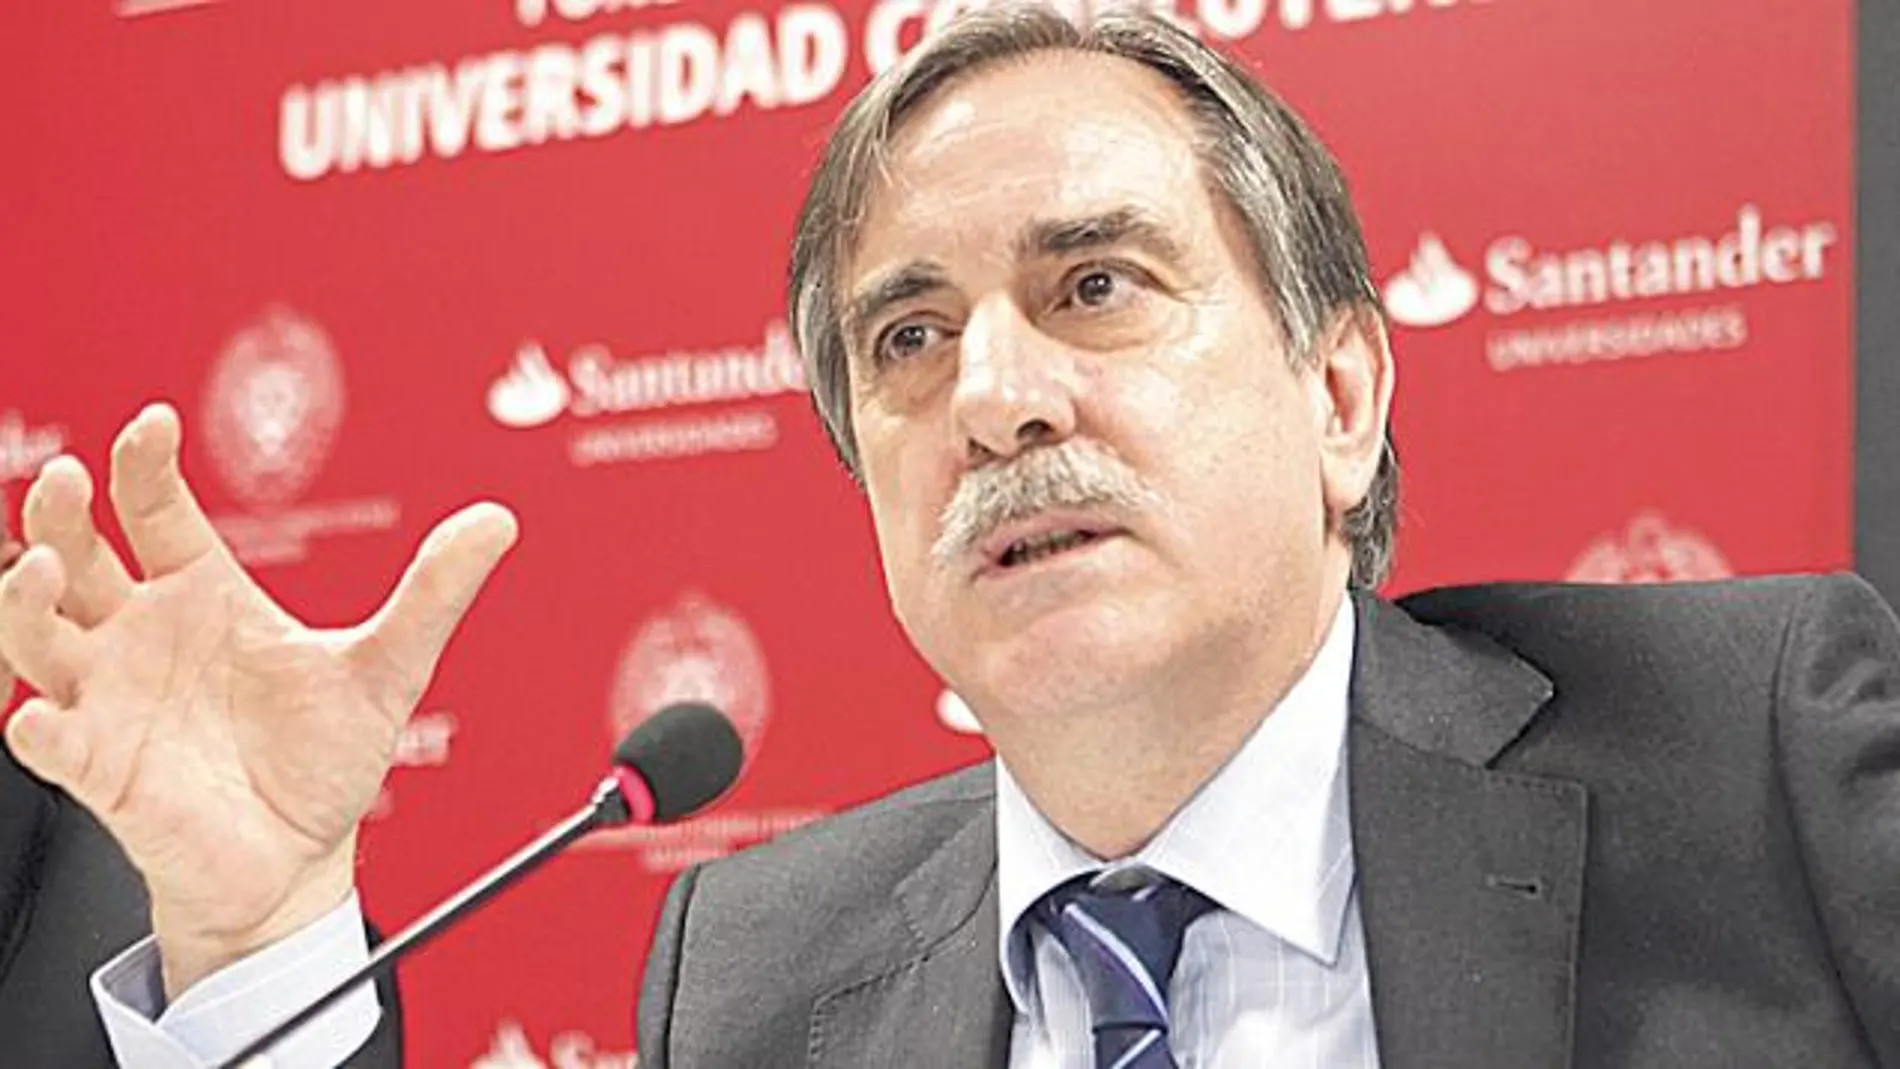 El ministro de Trabajo, Valeriano Gómez, sí respaldó ayer la subida de impuestos a los carburantes propuesta el martes por José Blanco